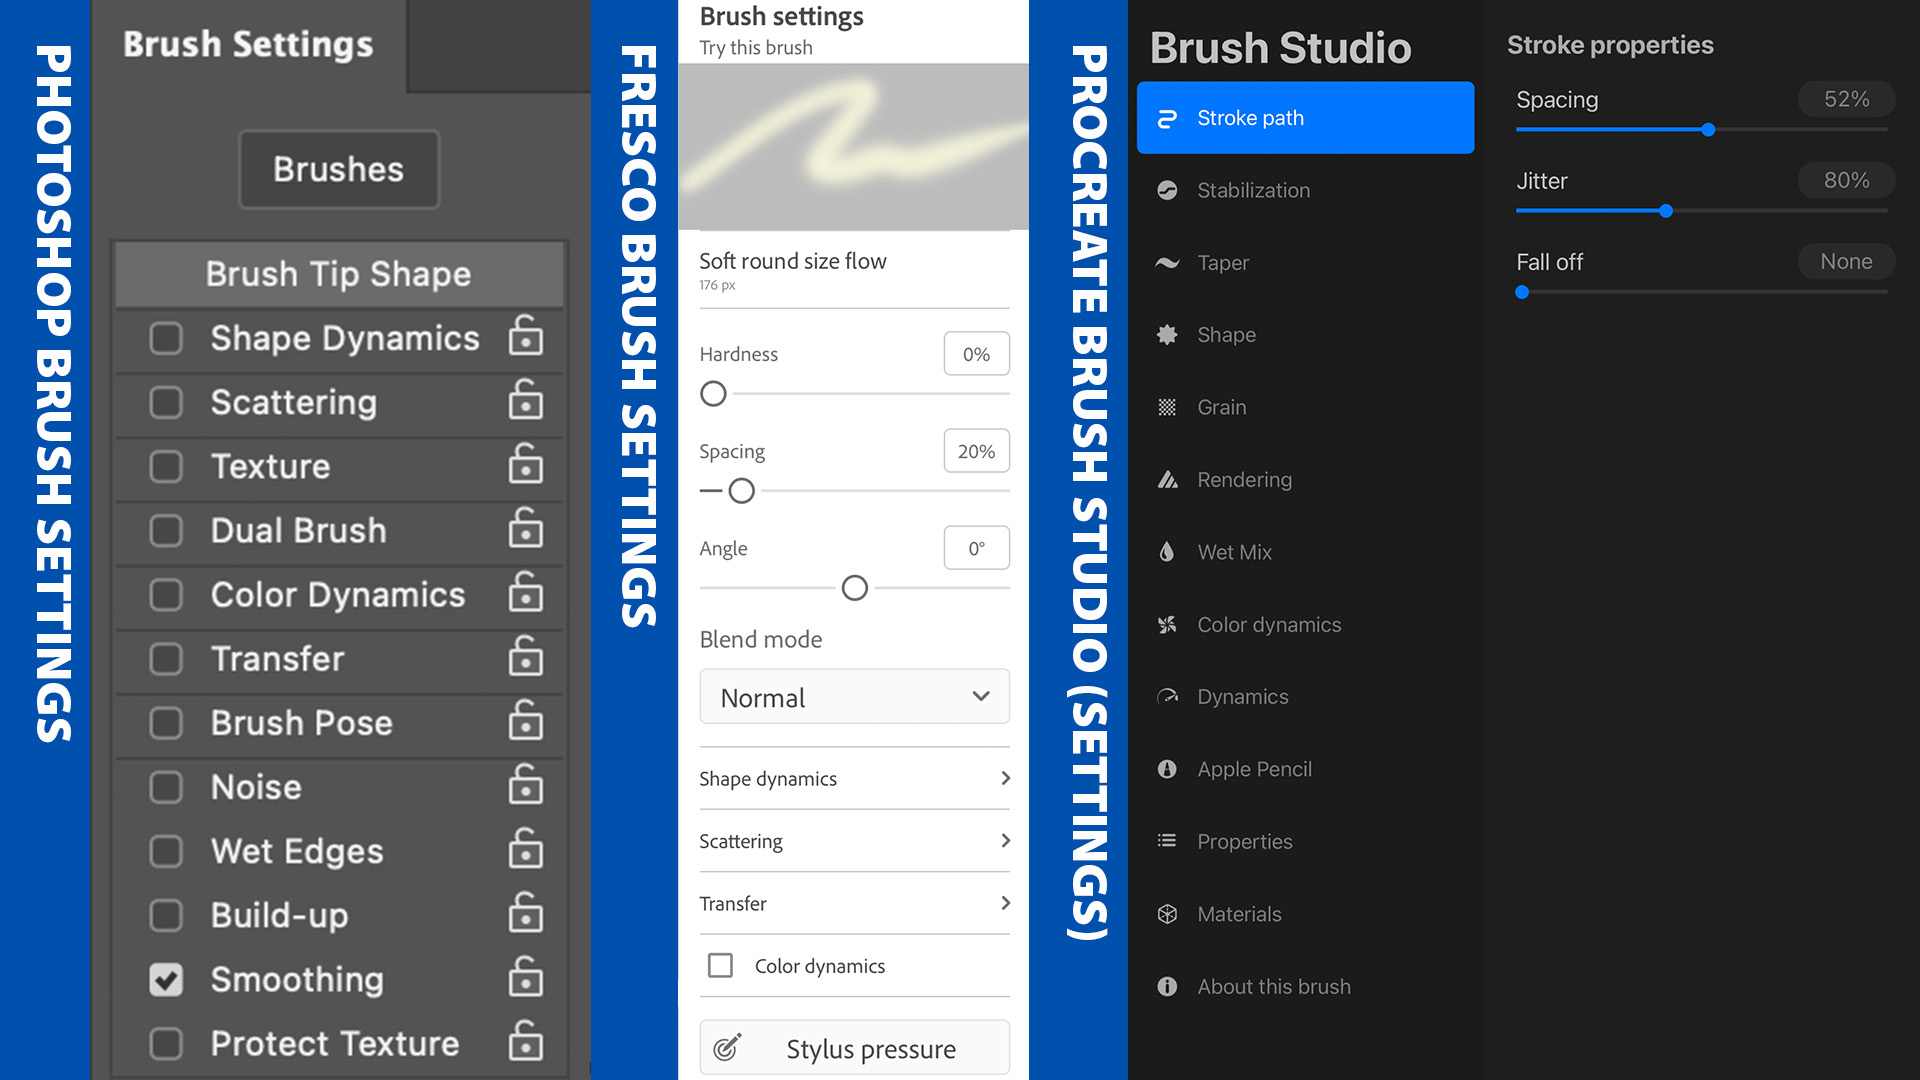 Brush settings panels for Photoshop, Fresco, and Procreate.